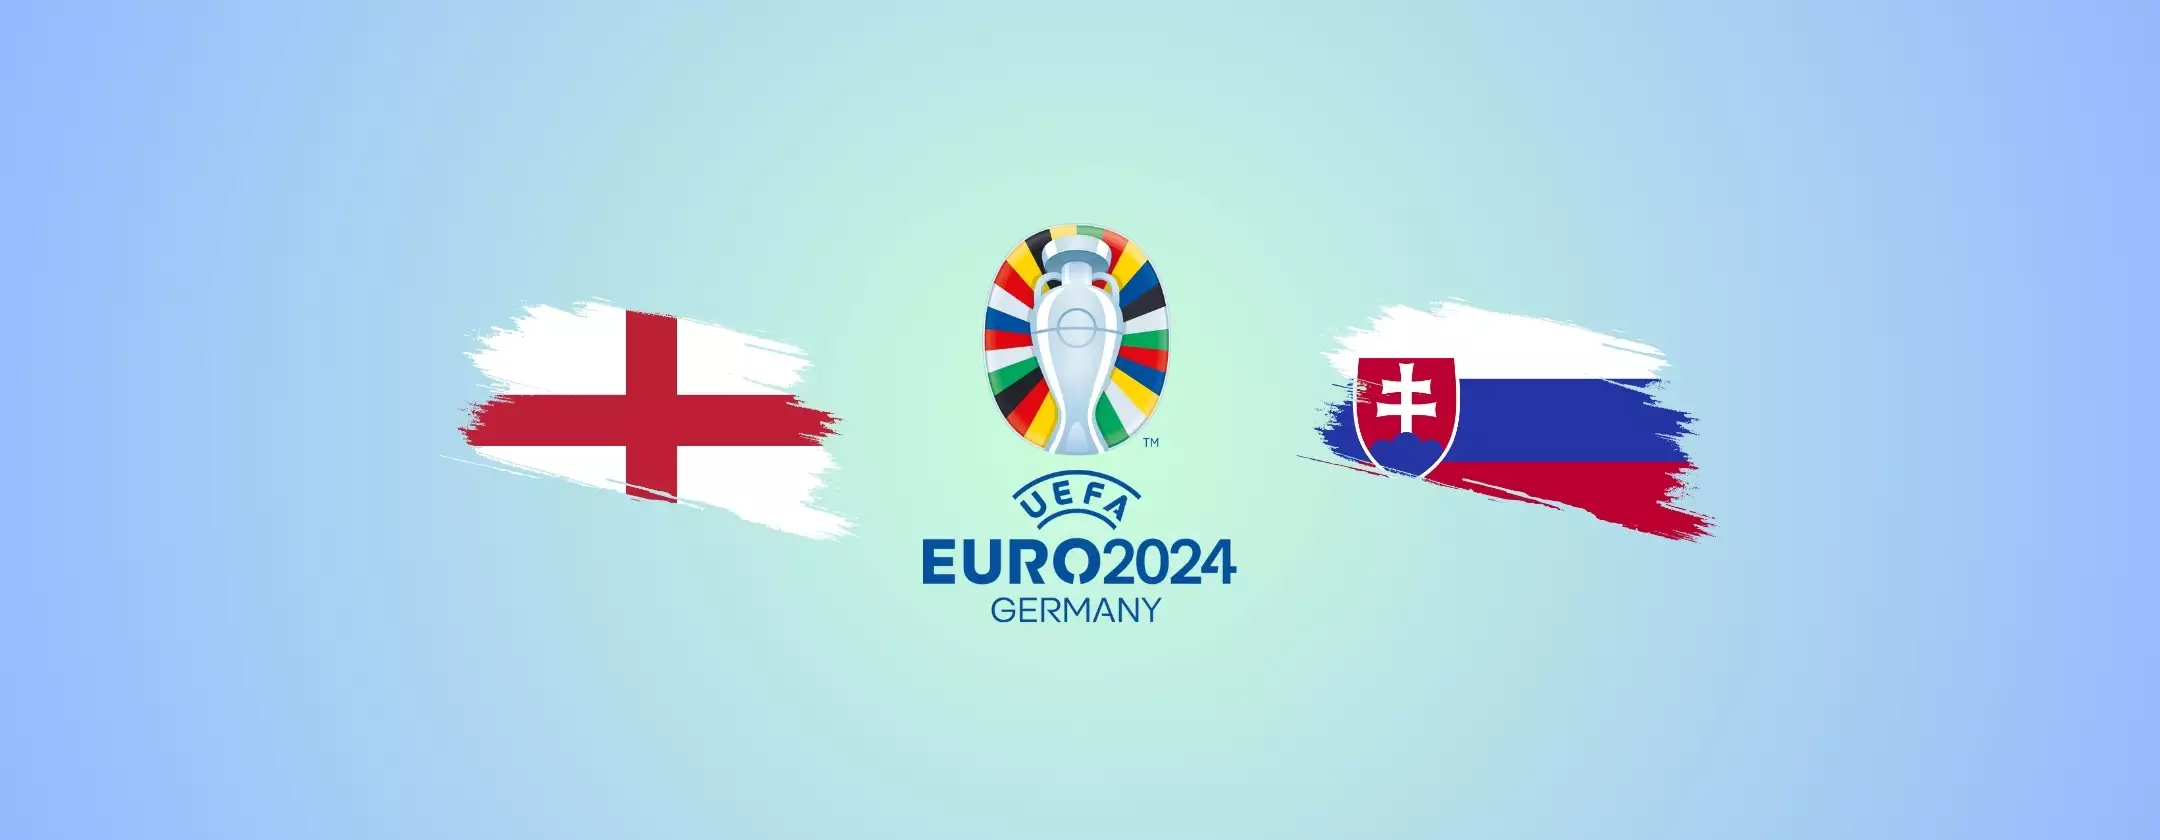 Inghilterra-Slovenia: come vedere la partita in streaming dall’estero